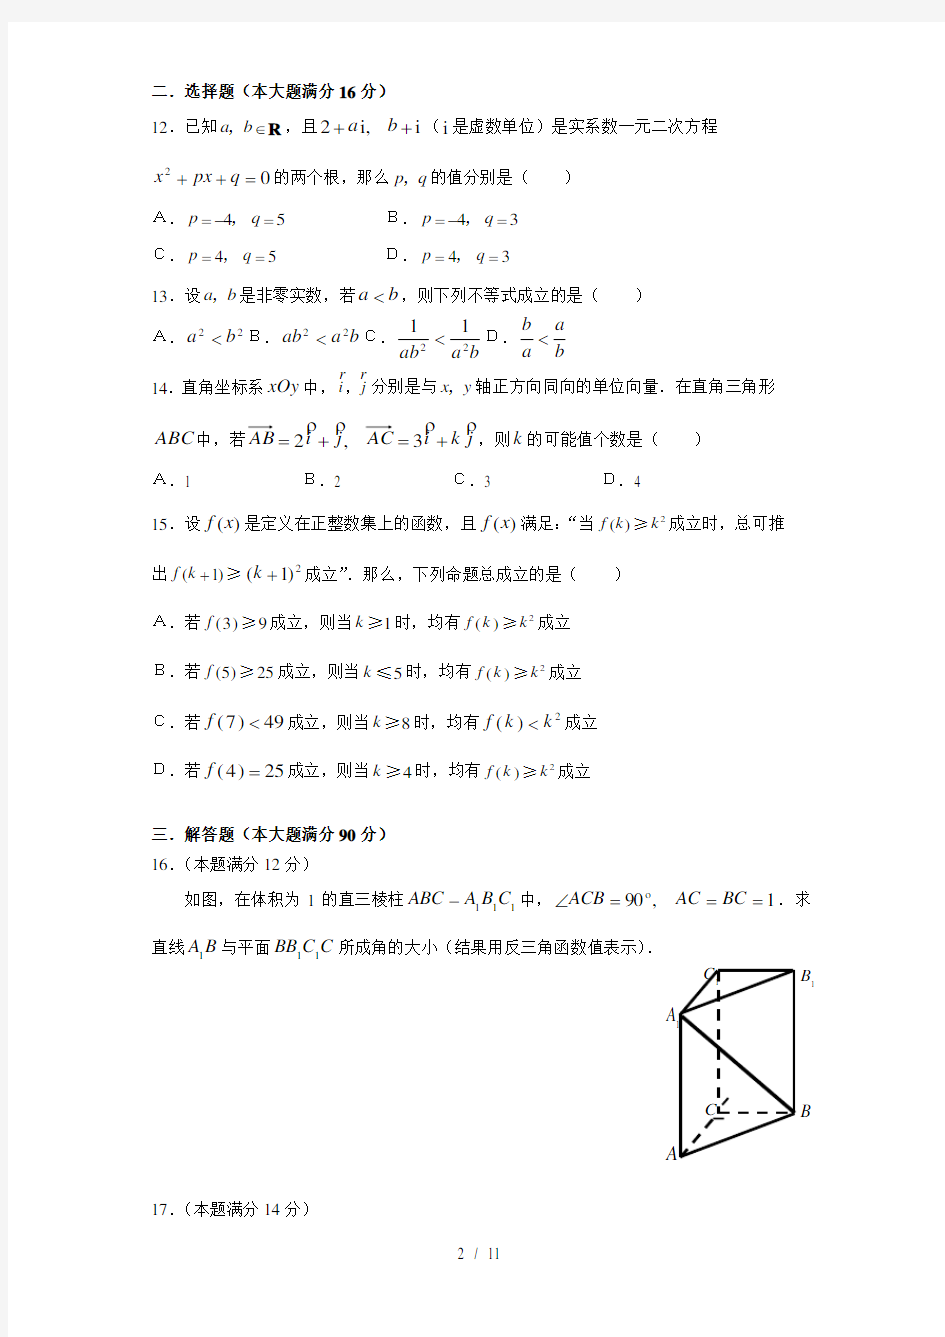 (完整)上海高考数学试卷与答案(理科),推荐文档